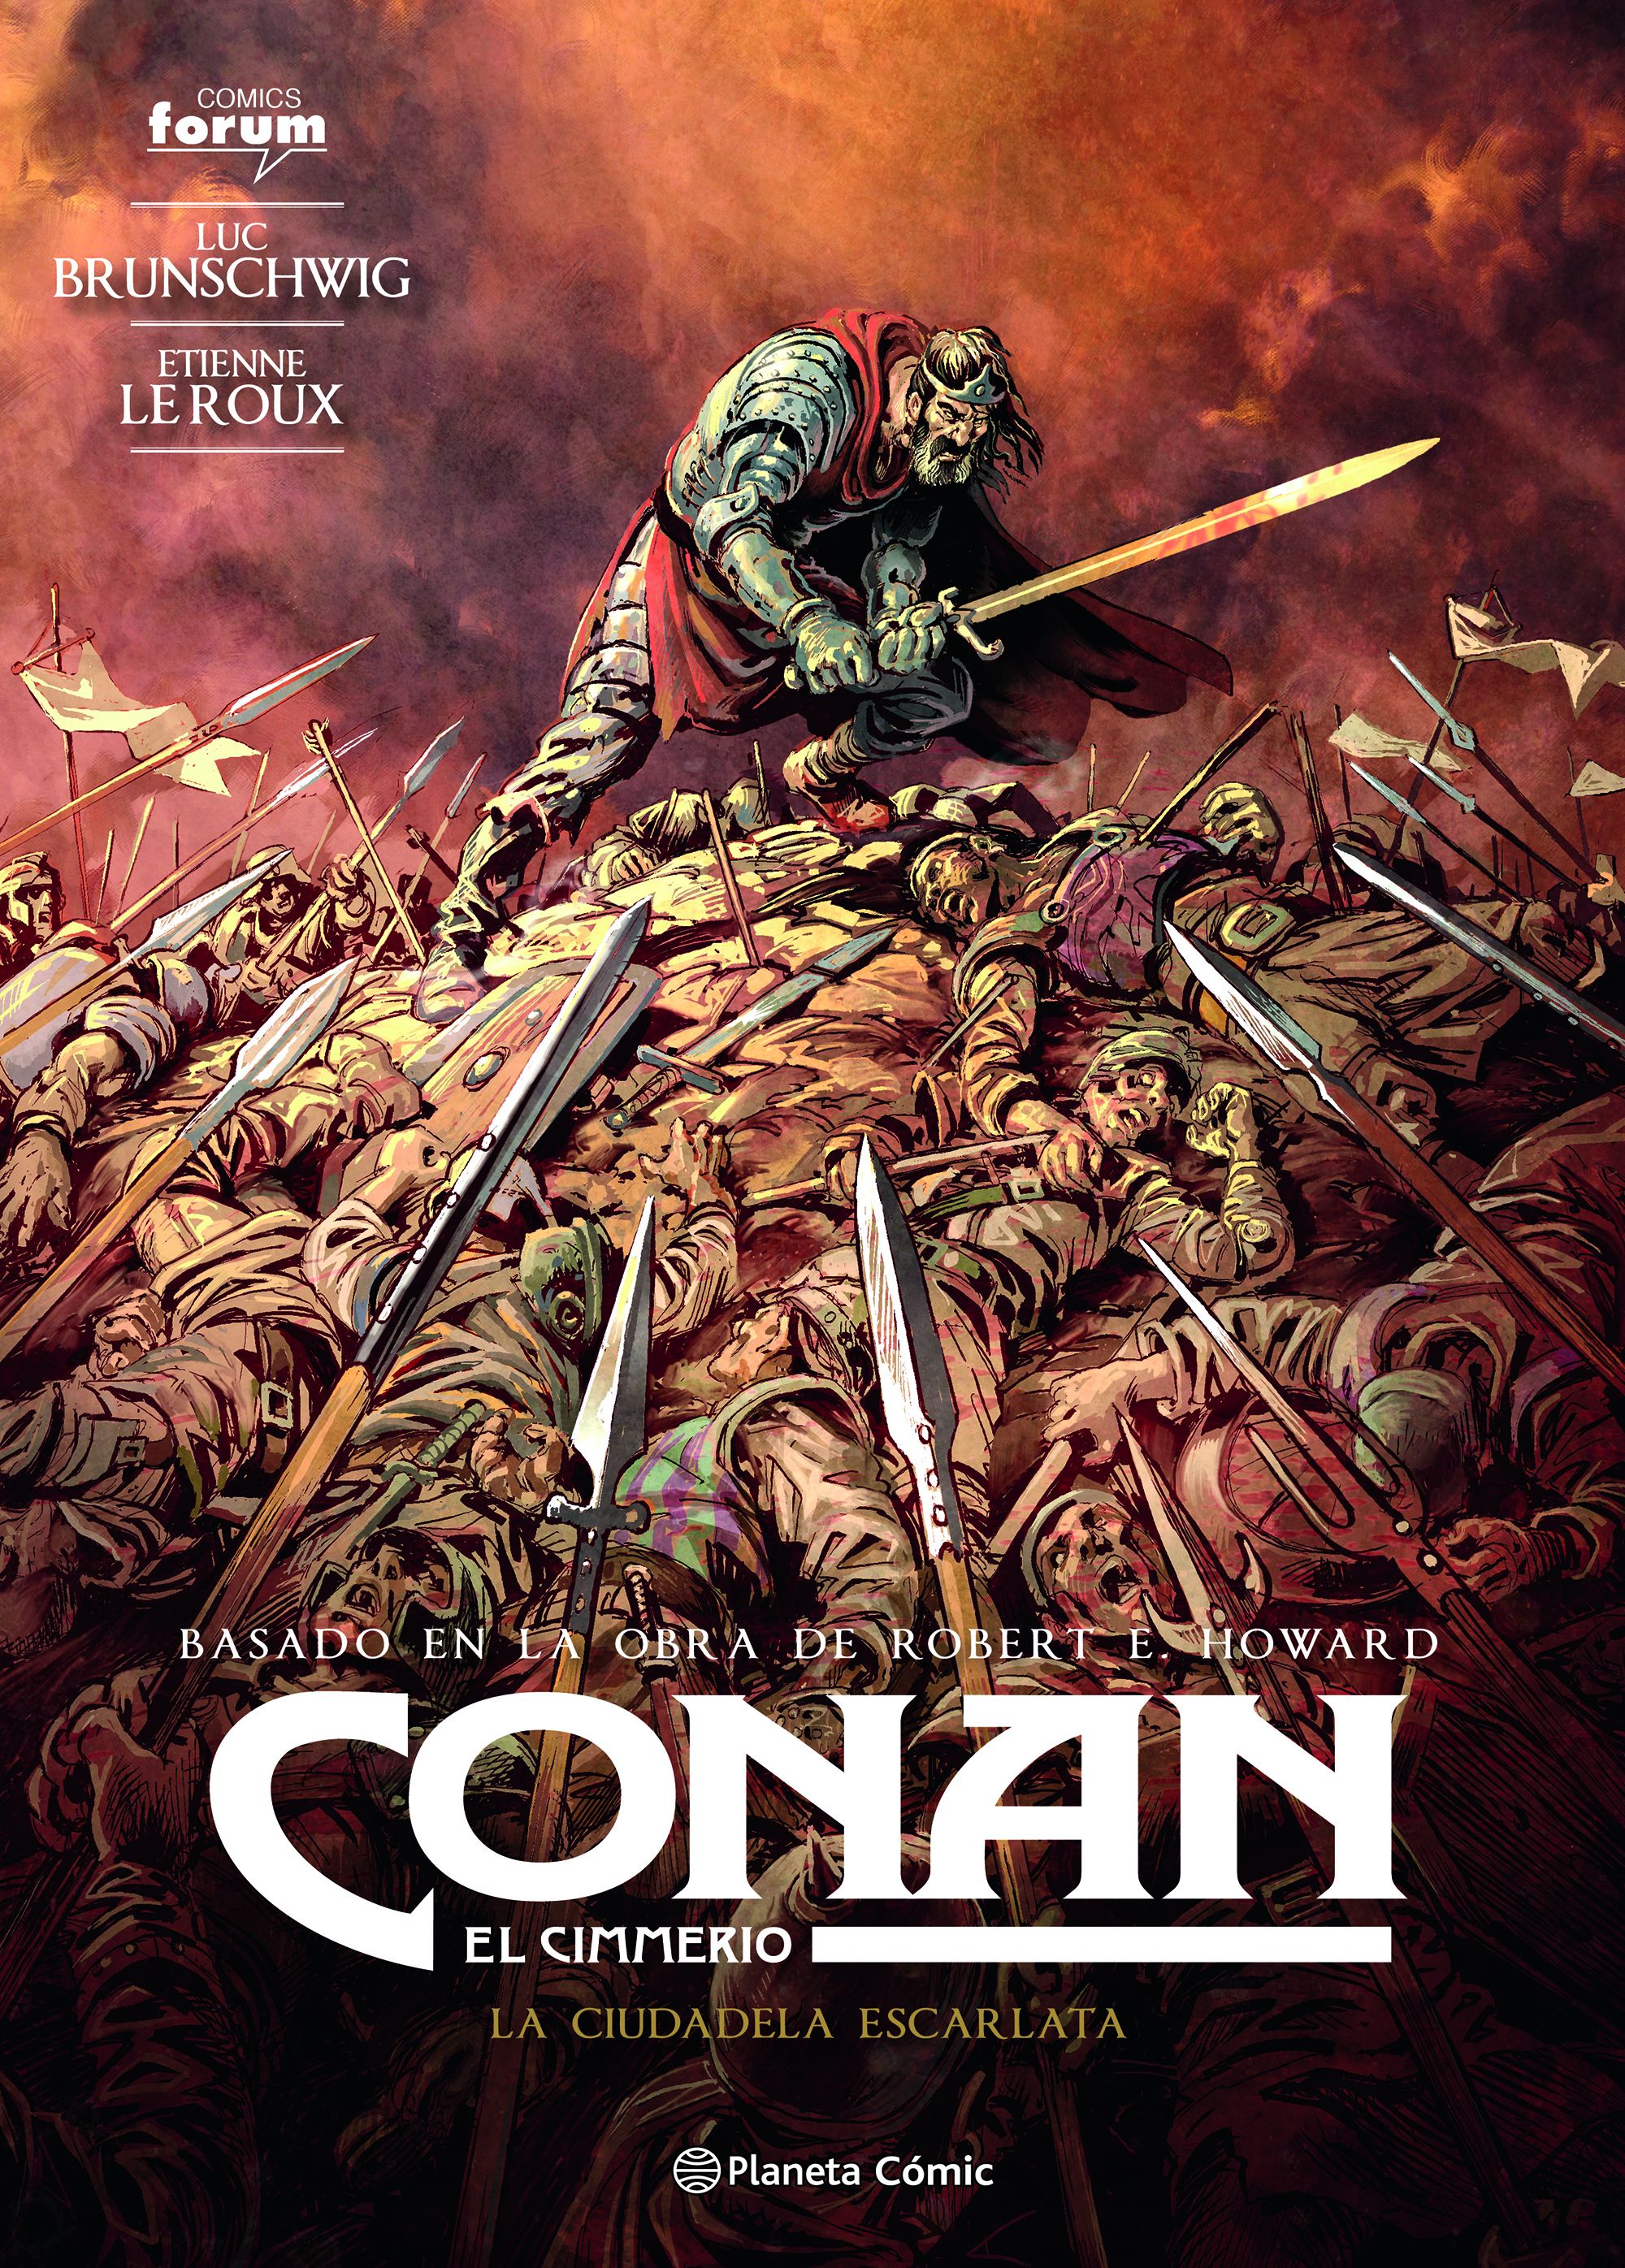 Conan: El Cimmerio #05